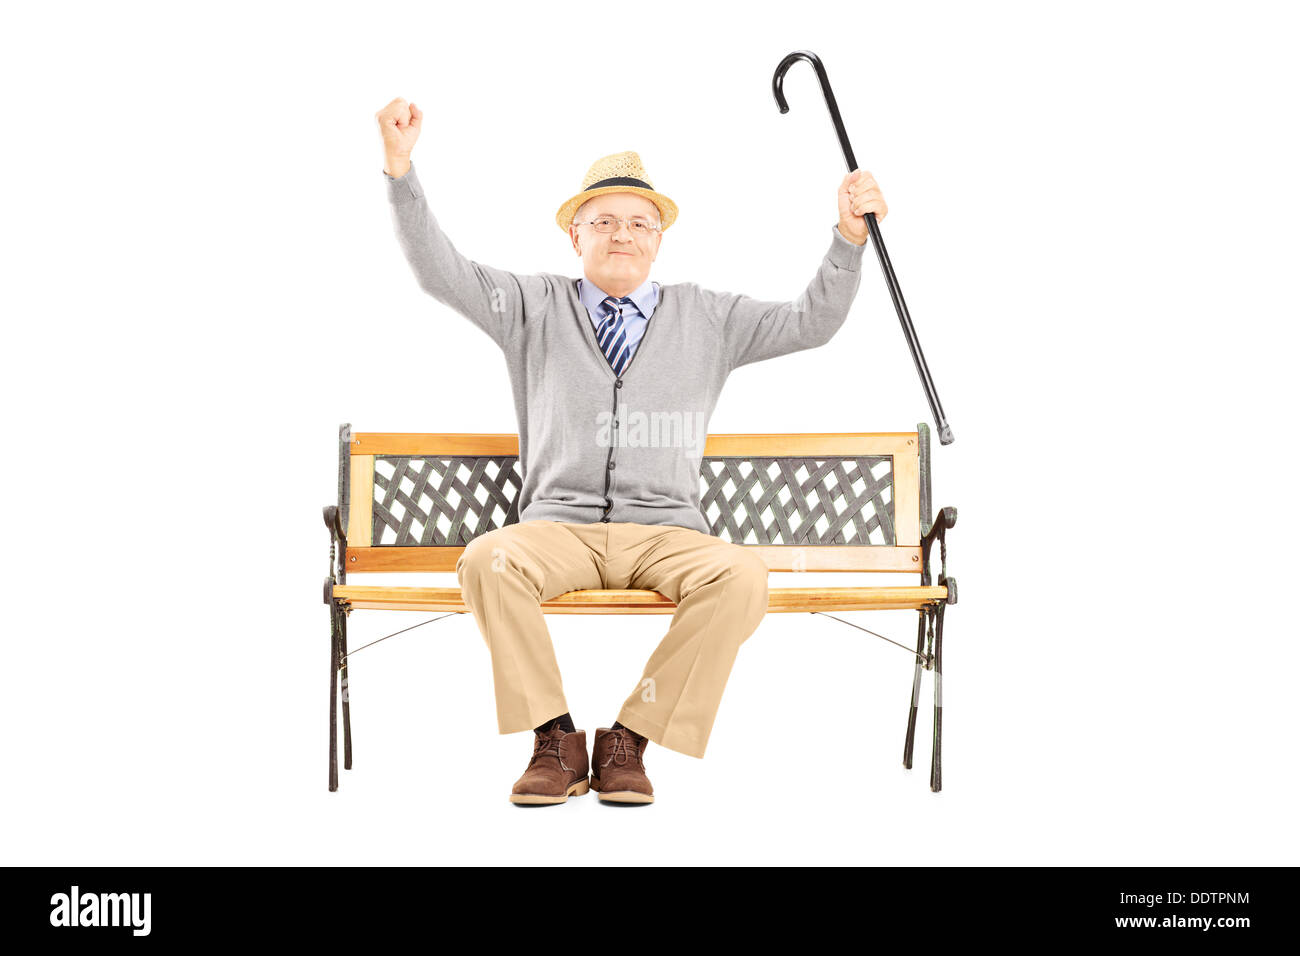 Happy Senior homme assis sur un banc en bois et les gestes du bonheur Banque D'Images